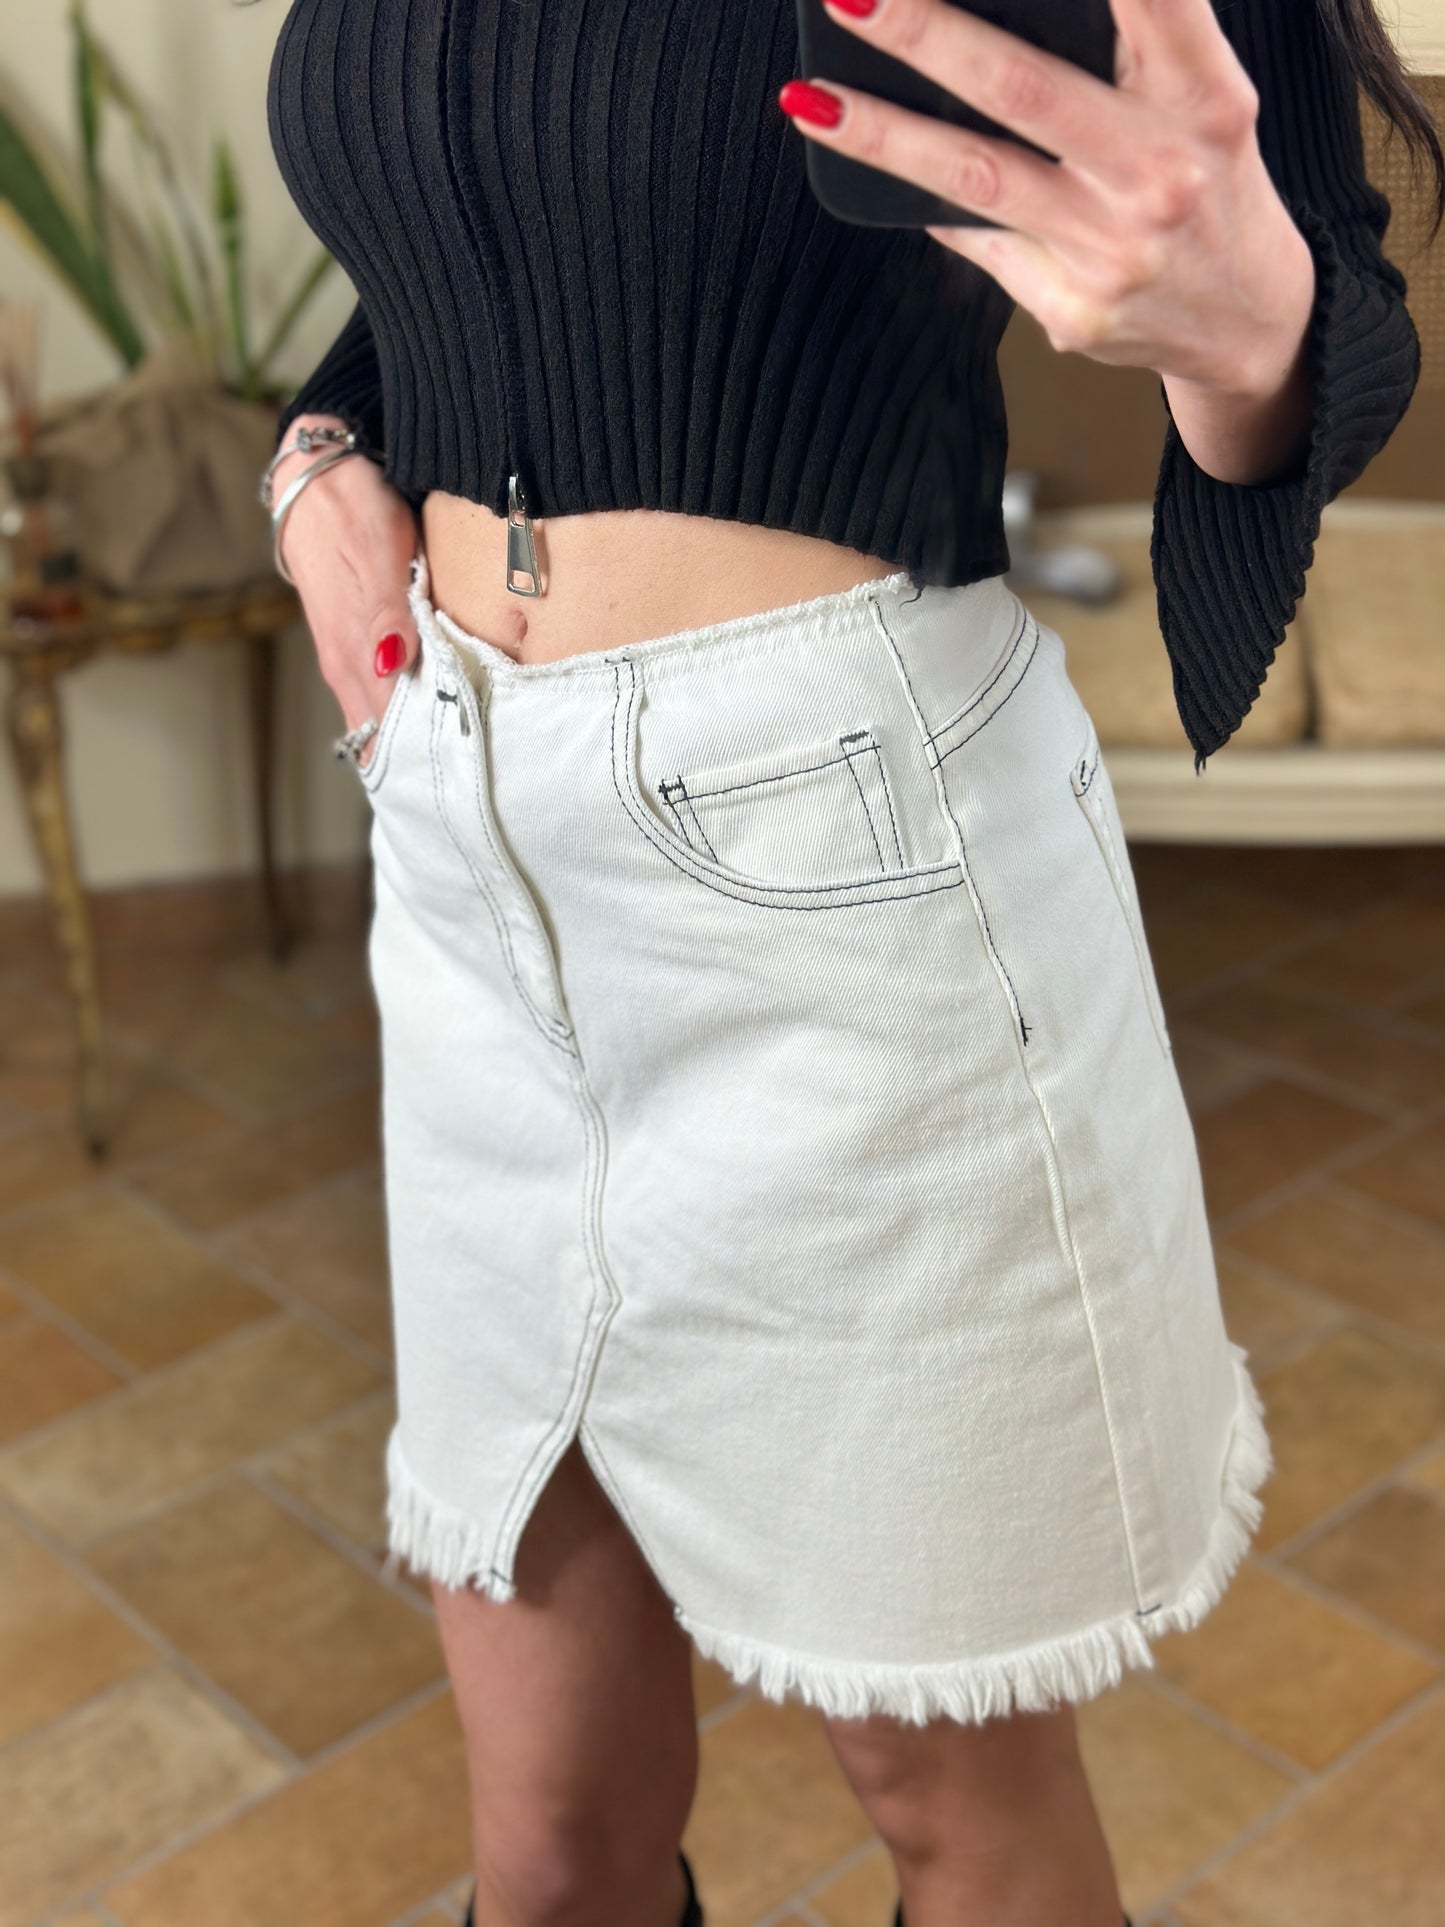 Eleh minigonna in jeans bianca sfrangiata